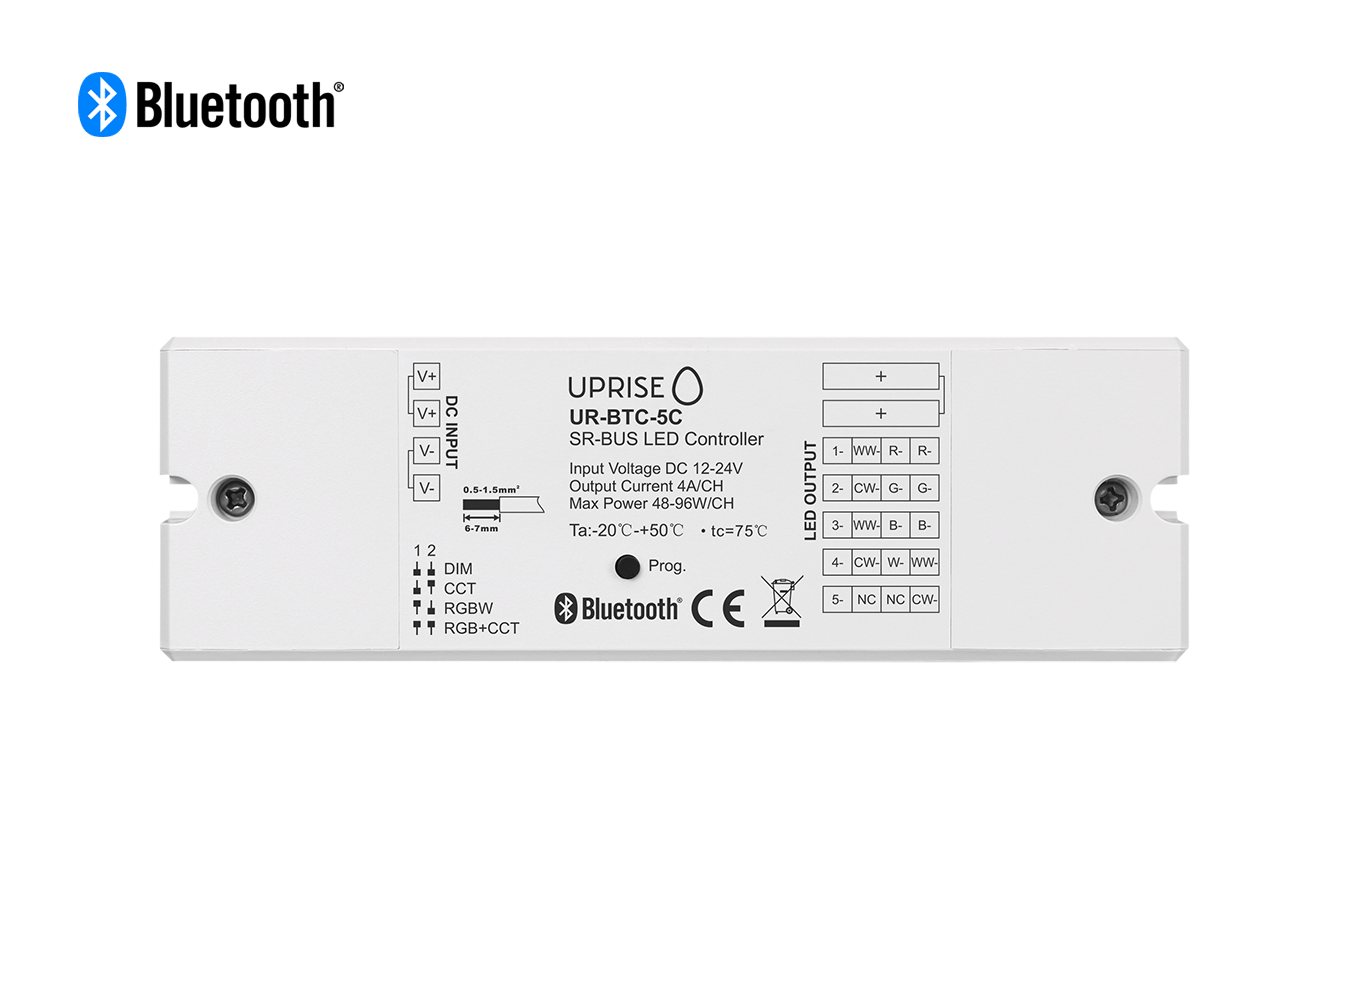 Bluetooth 5CH LED Controller Receiver For RGBCW (12V-24V) Overview - UR-BTC-5C